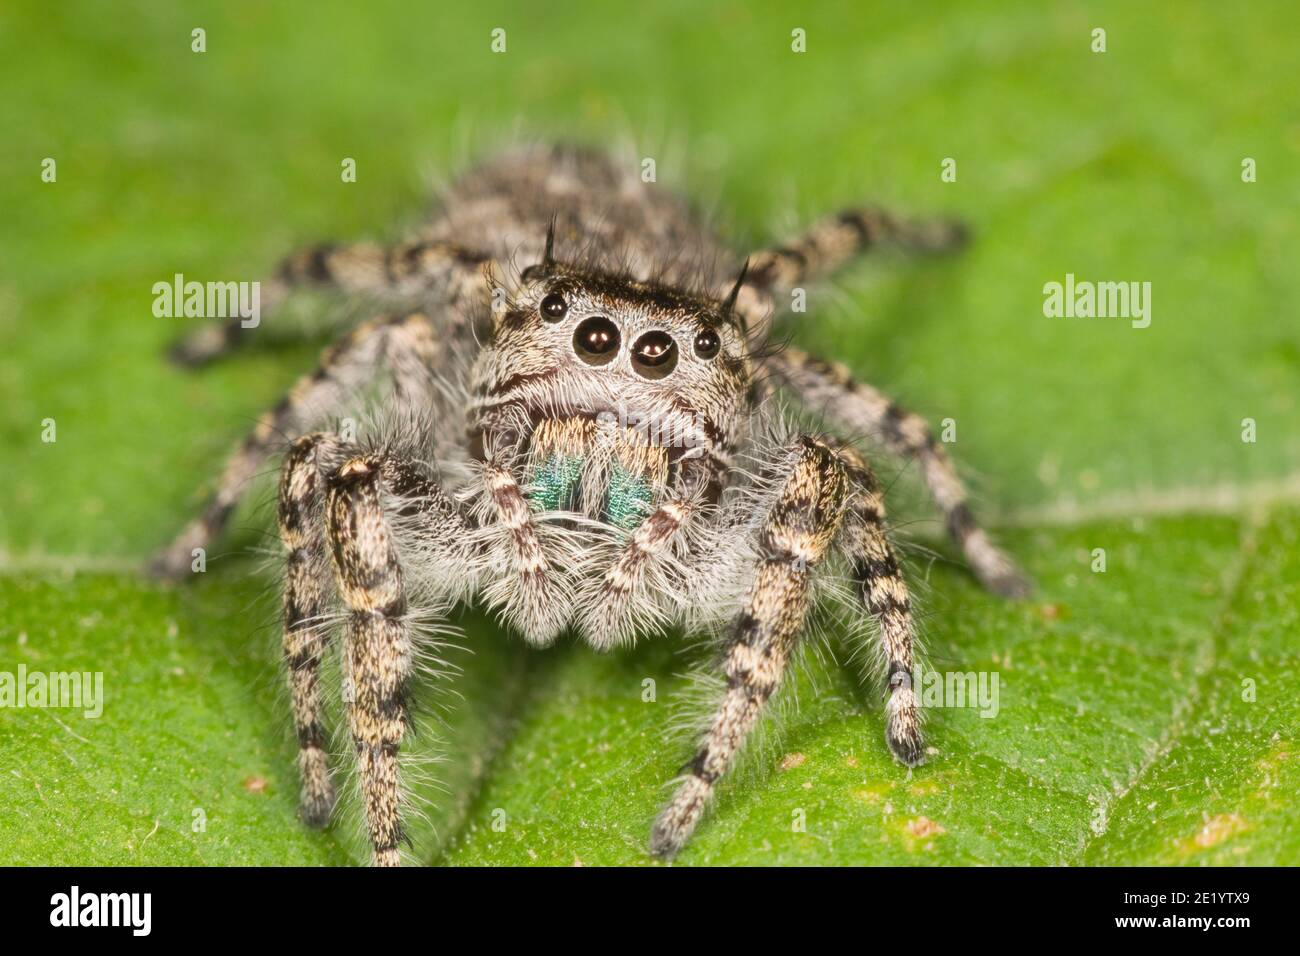 Jumping Spider, Phidippus asotus, Salticidae. Stock Photo